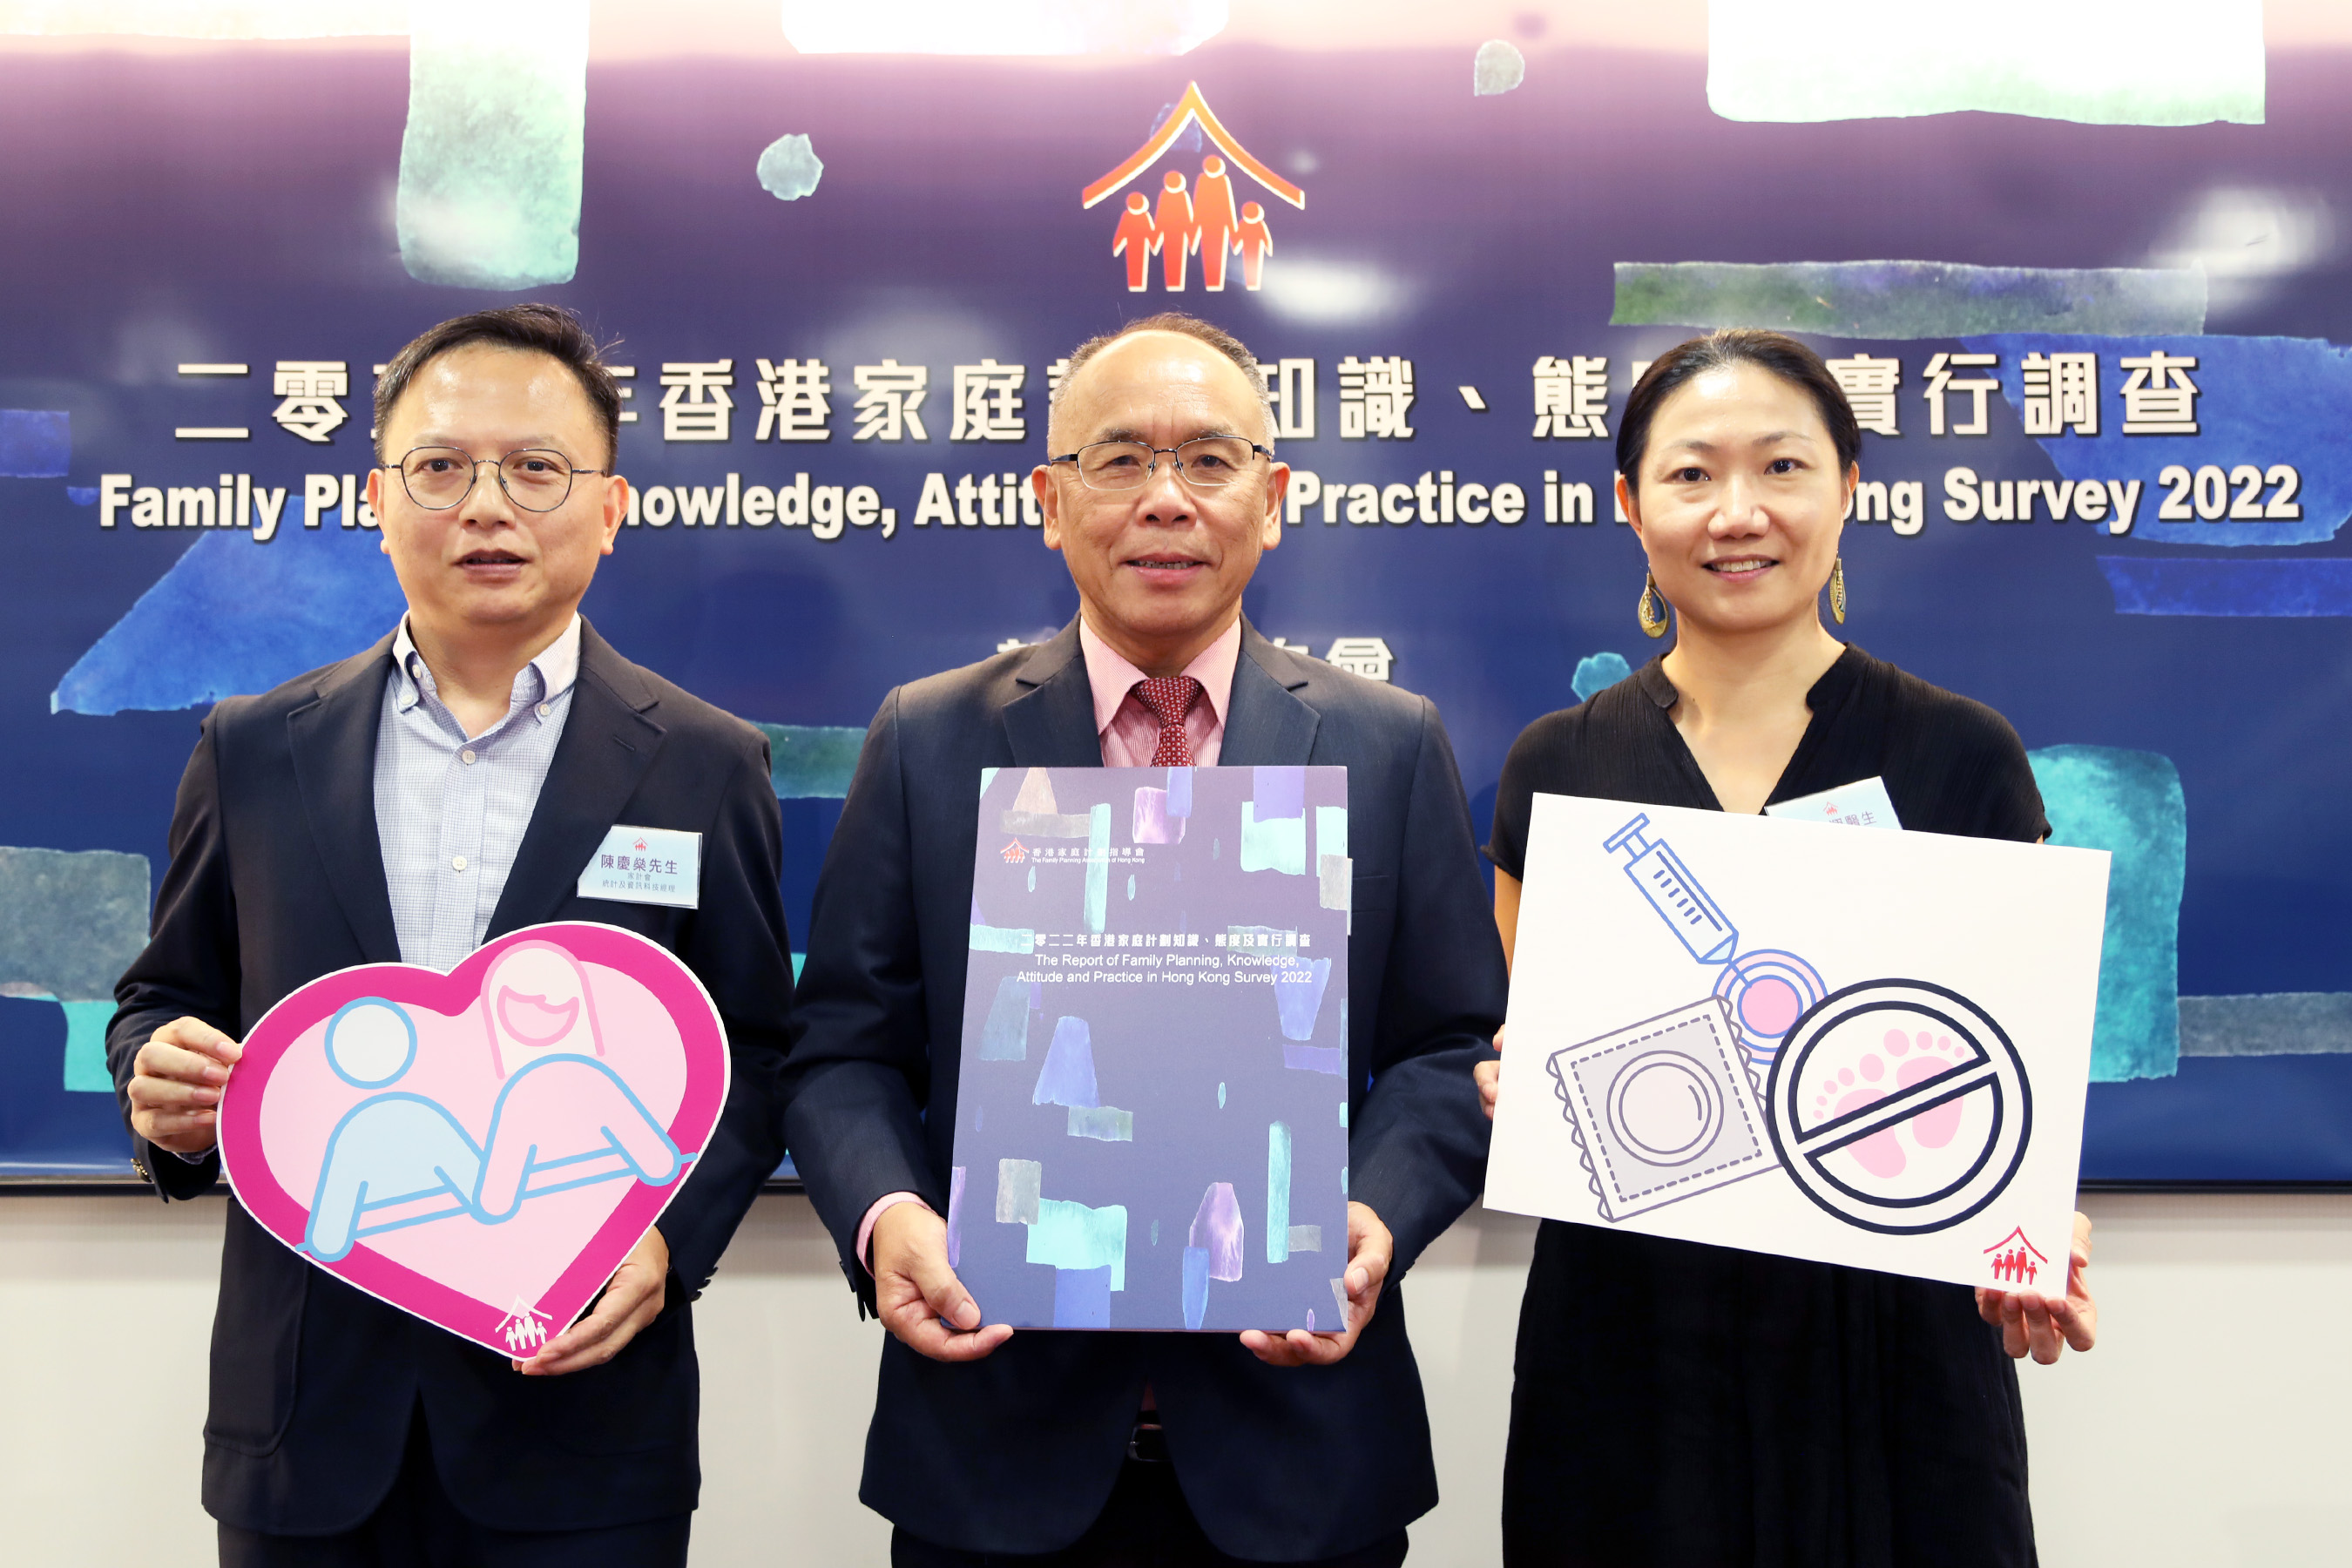 葉兆輝教授(中)、林慧翔醫生(右)及陳慶燊先生(左)